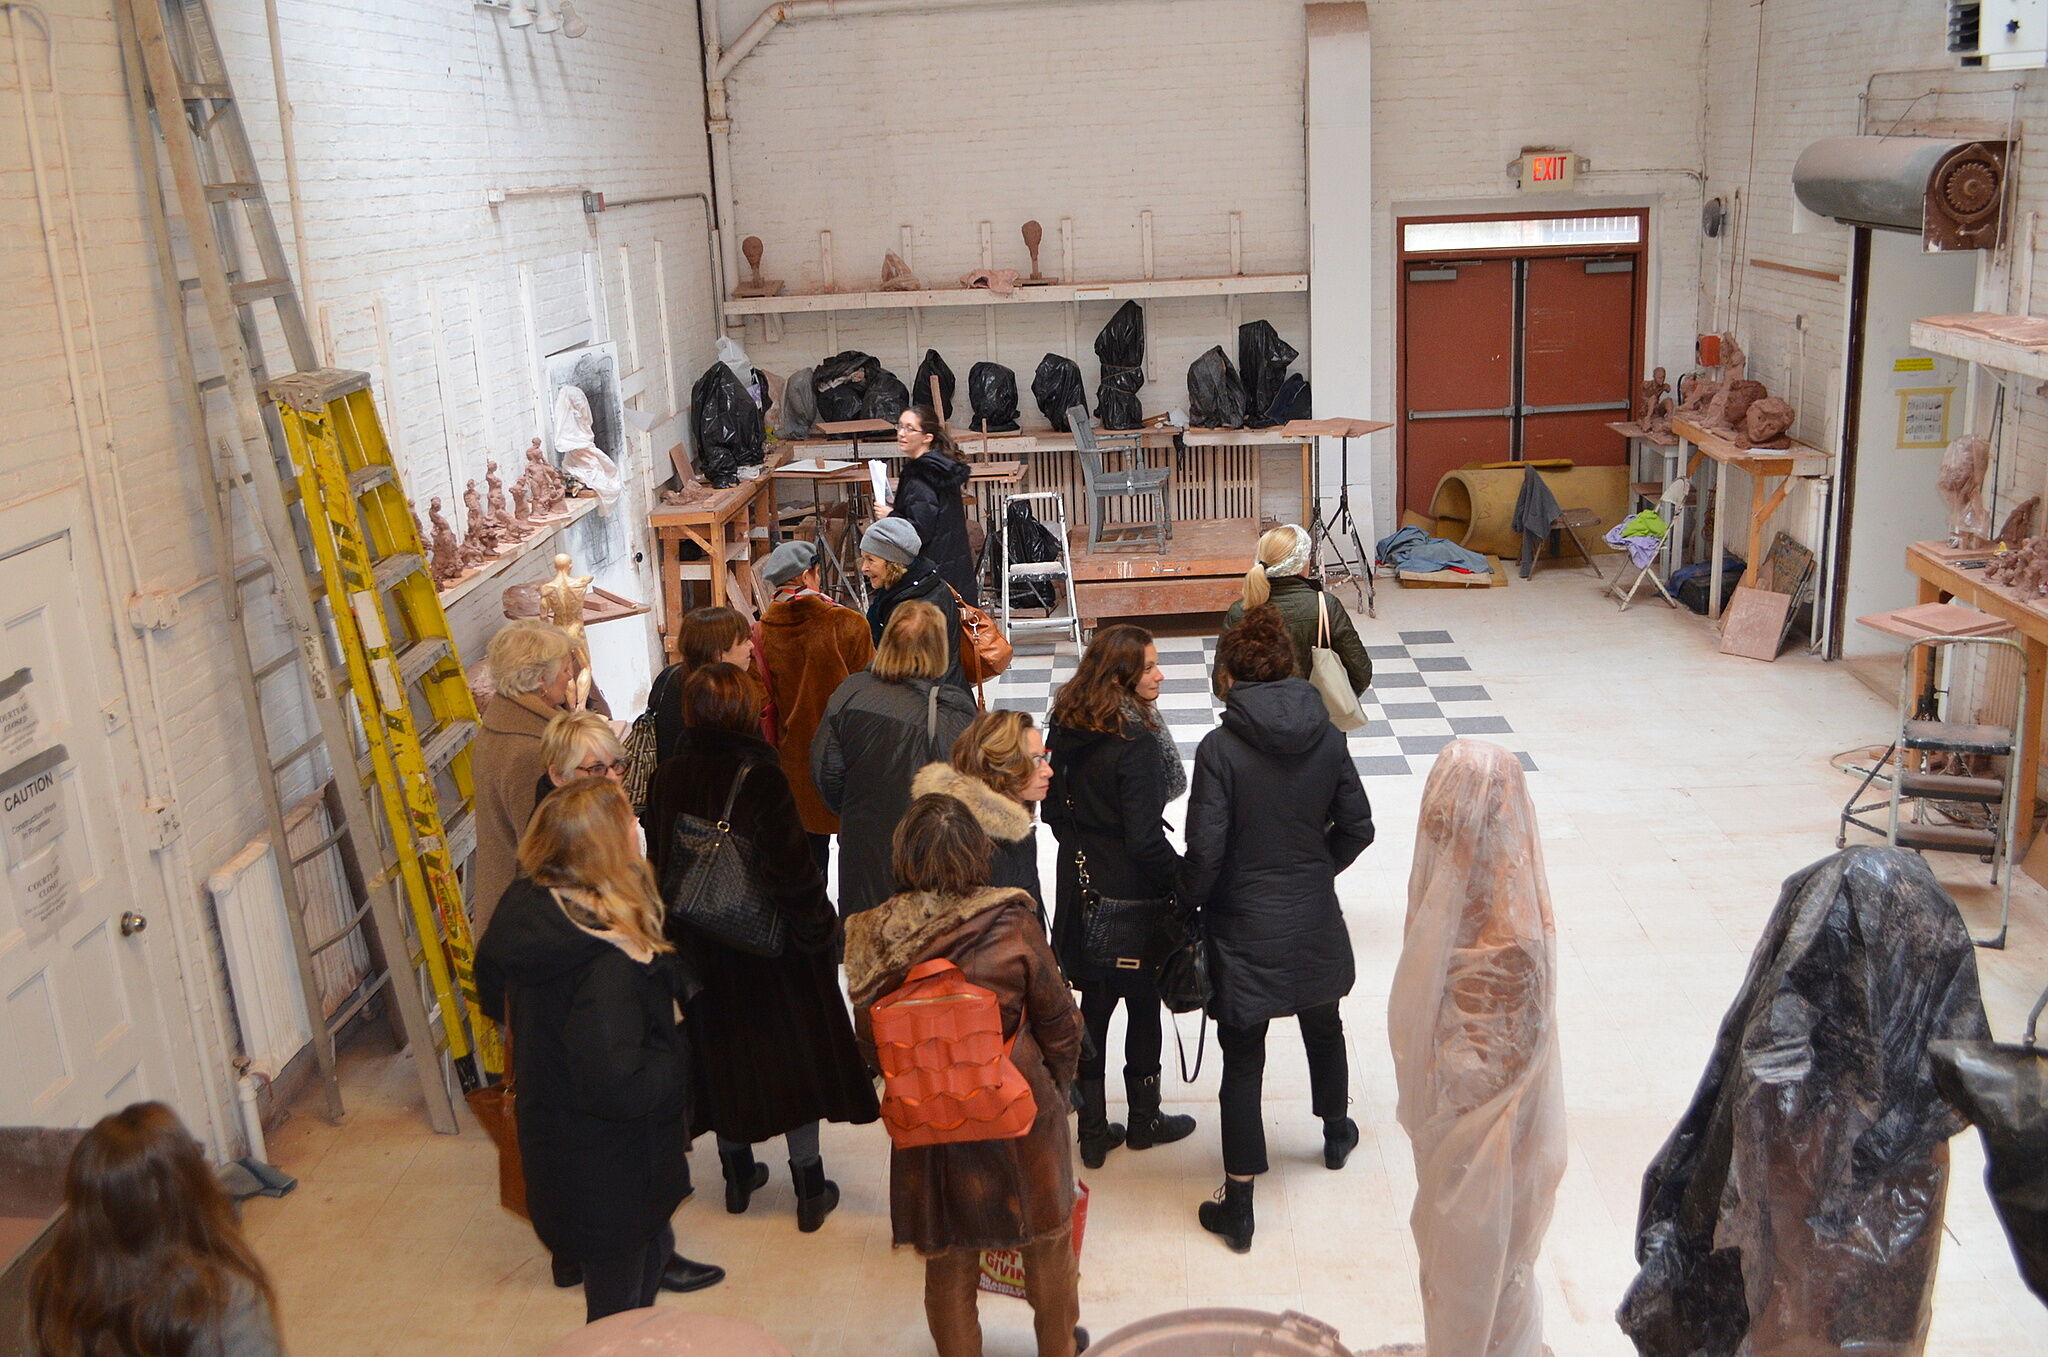 A group tours a sculpture studio